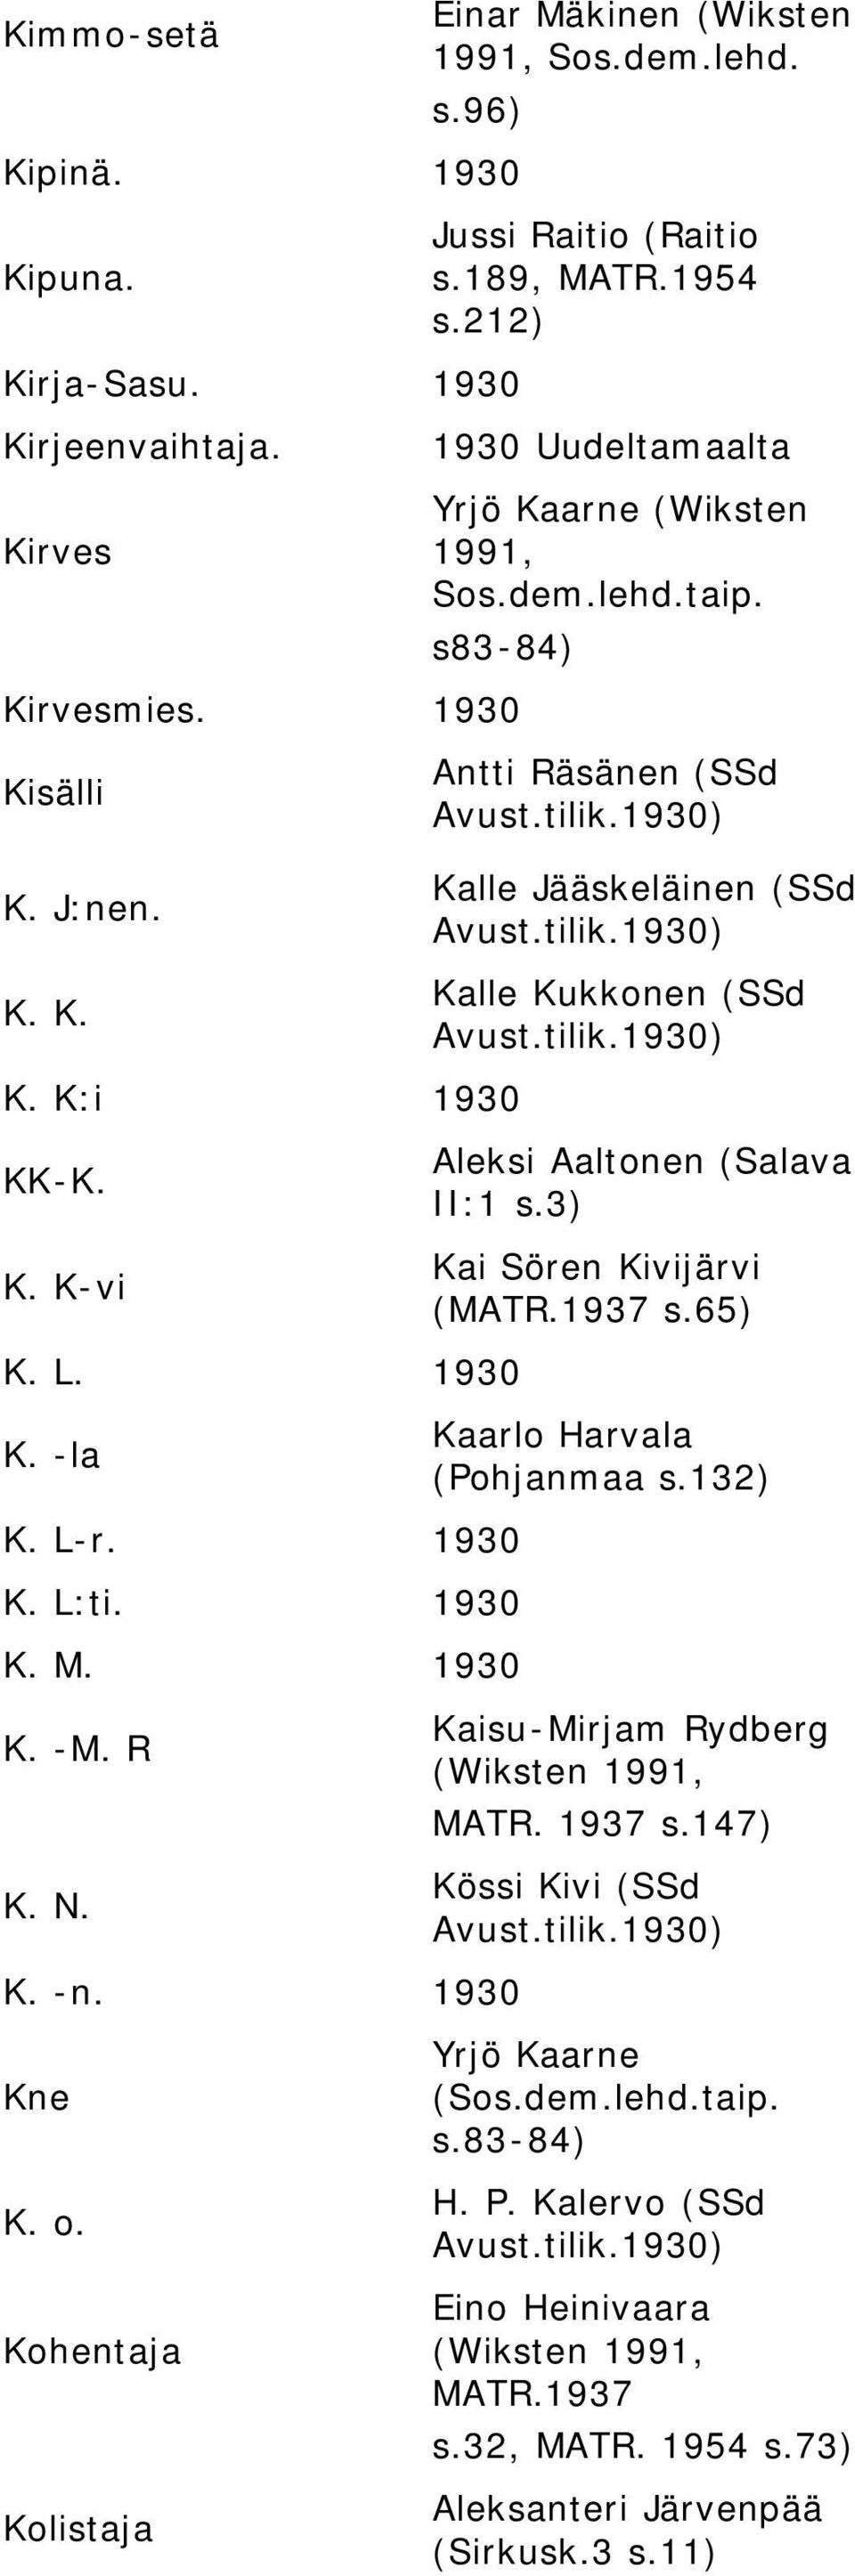 s83-84) Antti Räsänen (SSd Kalle Jääskeläinen (SSd Kalle Kukkonen (SSd Aleksi Aaltonen (Salava II:1 s.3) Kai Sören Kivijärvi (MATR.1937 s.65) Kaarlo Harvala (Pohjanmaa s.